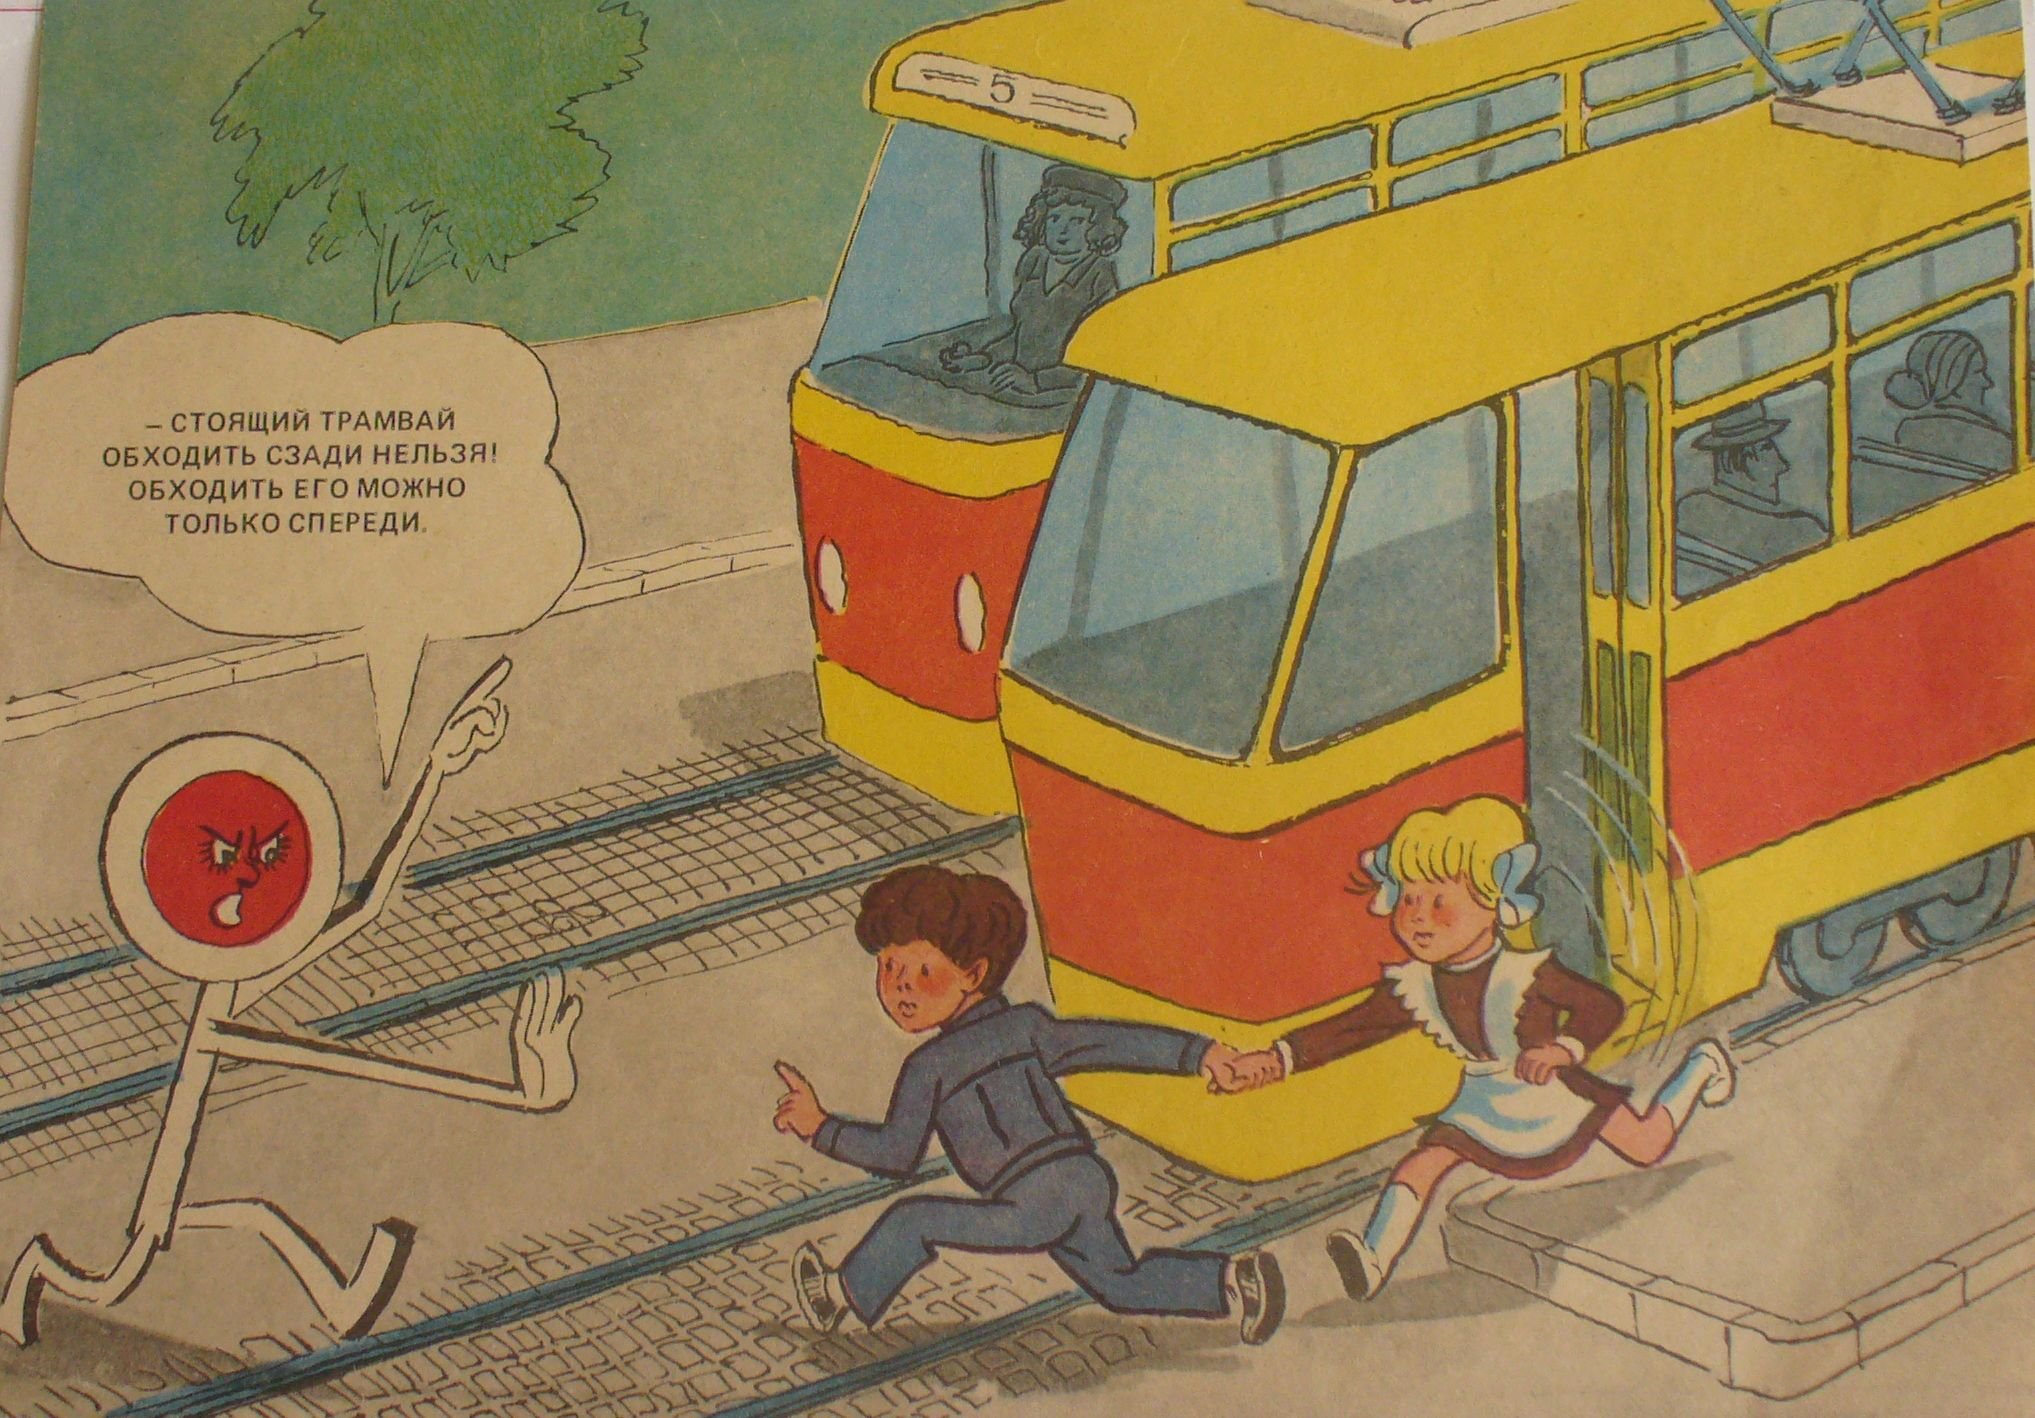 Транспорт в 10 раз. Обходить трамвай. Трамвай иллюстрация. Трамвай иллюстрация для детей. Трамвай обходи спереди.